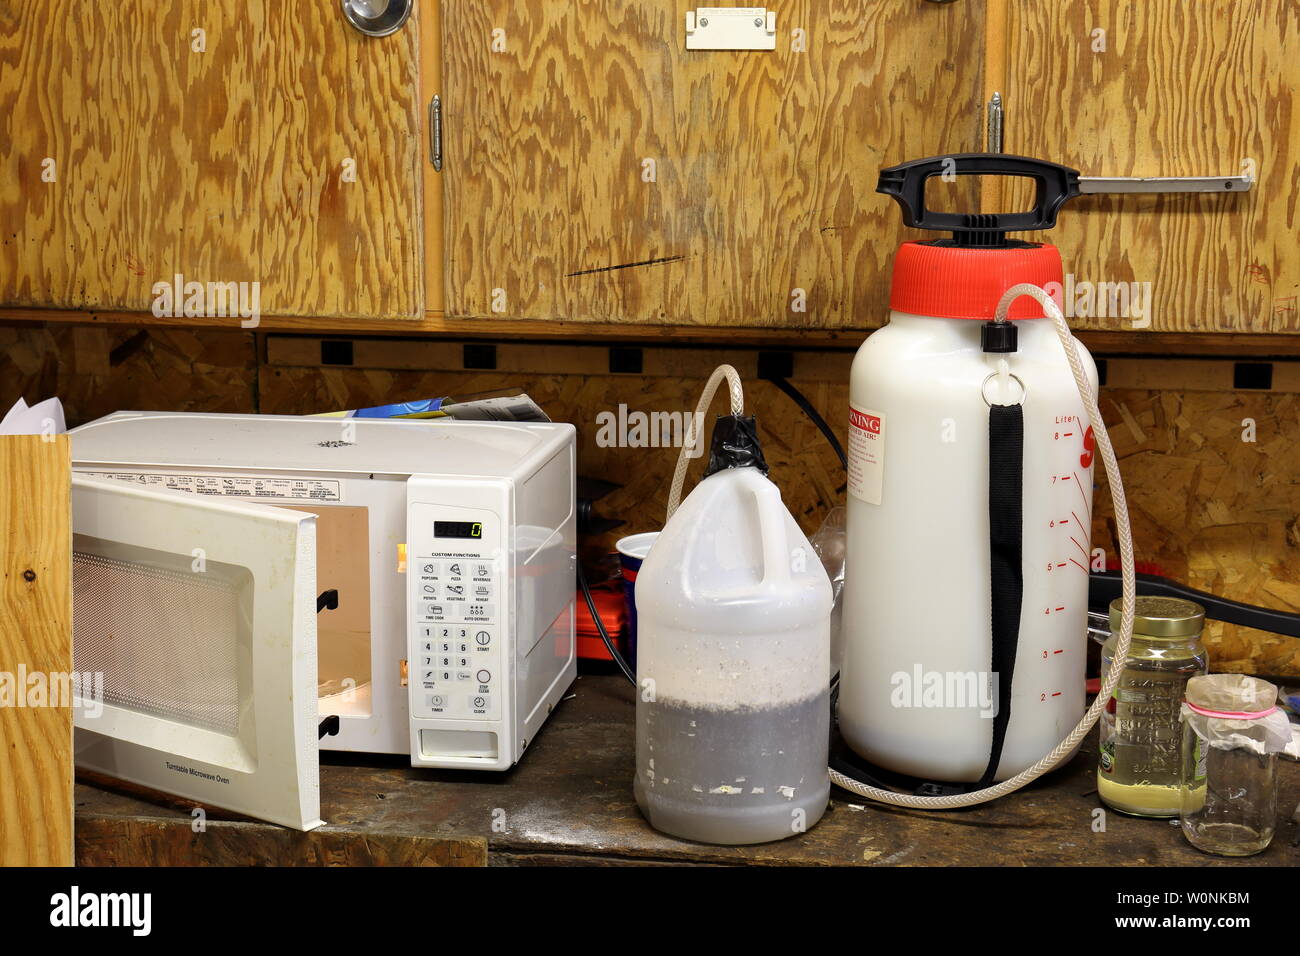 Laboratorio de metanfetamina en un garaje del banco de trabajo consta de una botella de plástico, un pulverizador químico, y tarros de disolventes. Foto de stock